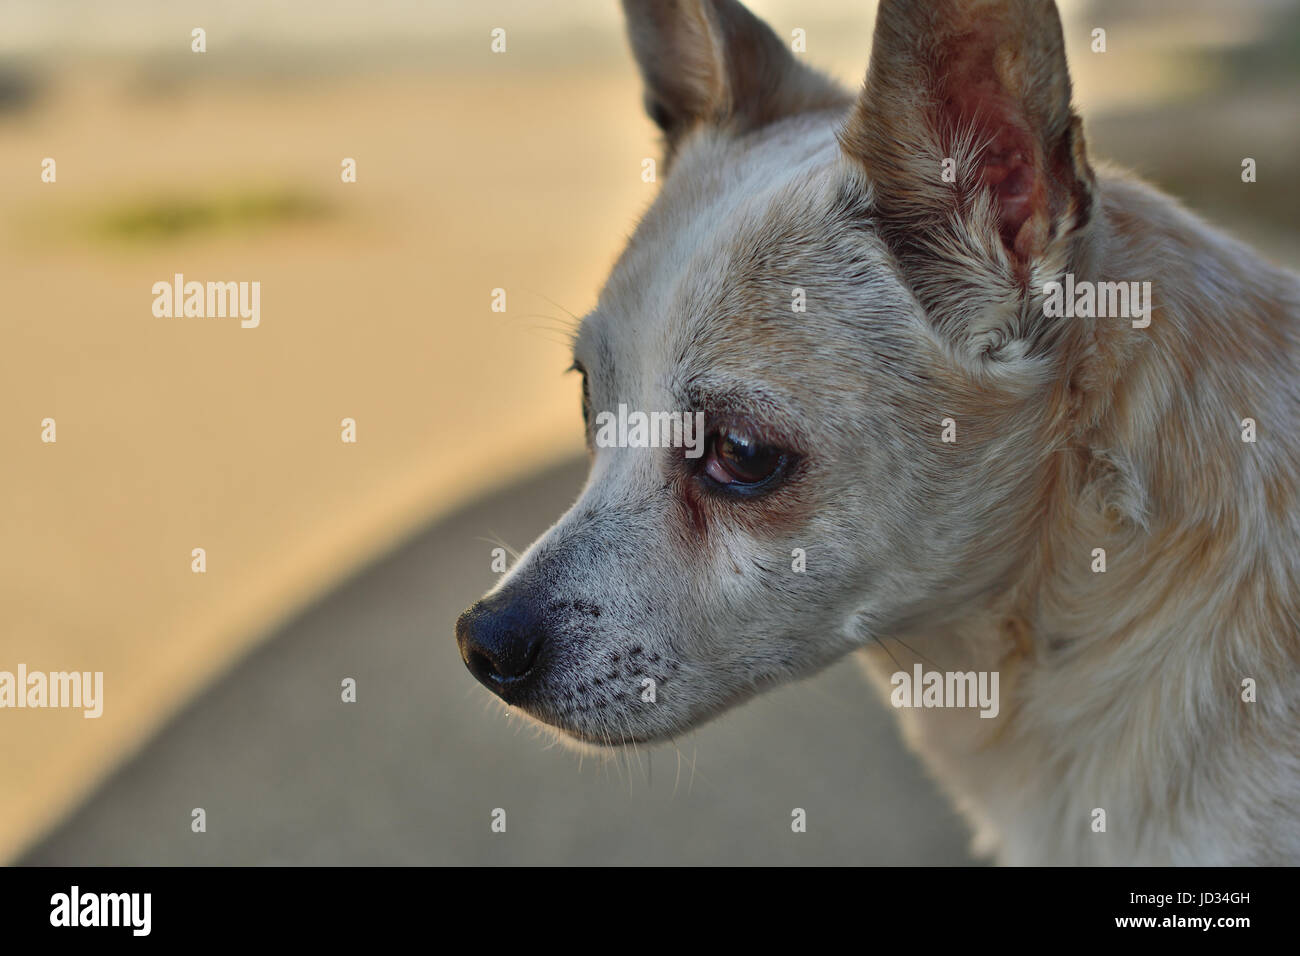 Weiß und Tan, freundlichen Hund mit traurigen Augen, Nahaufnahme, Fotografie, mit dem Hund zurück suchen, auf einem verschwommenen Hintergrund. Stockfoto